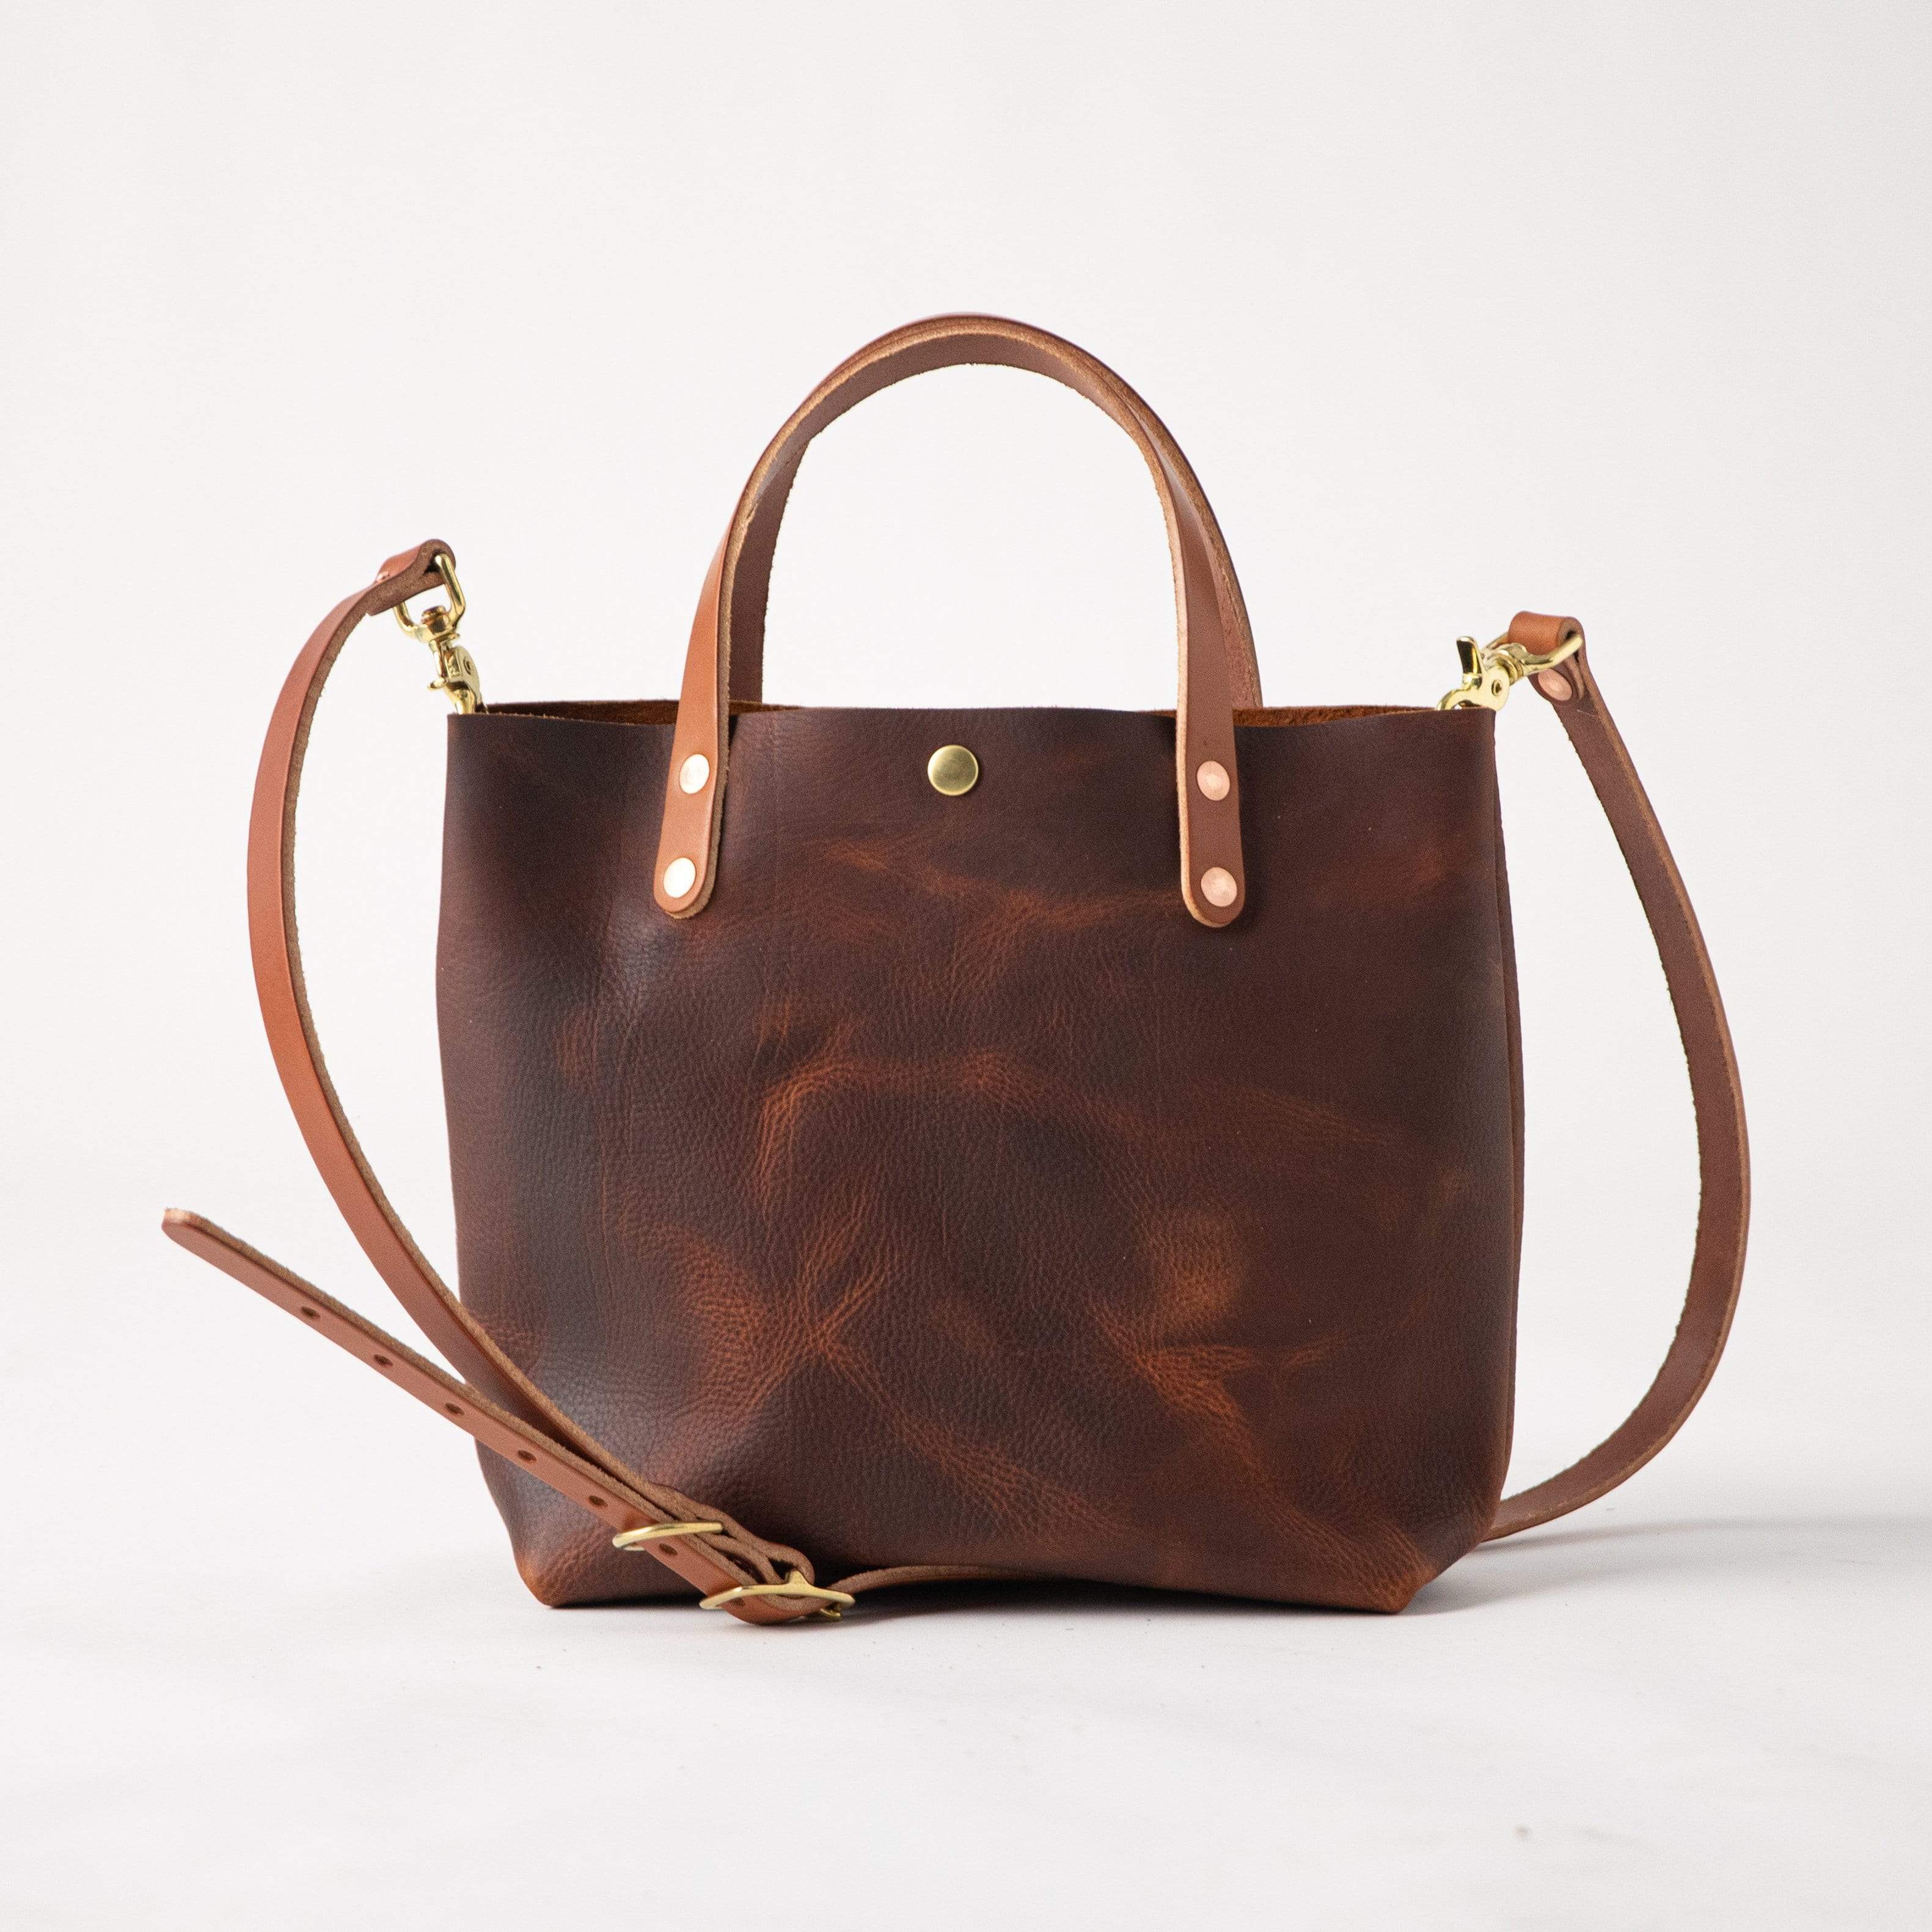 Tan Brown Leather Tote Bag